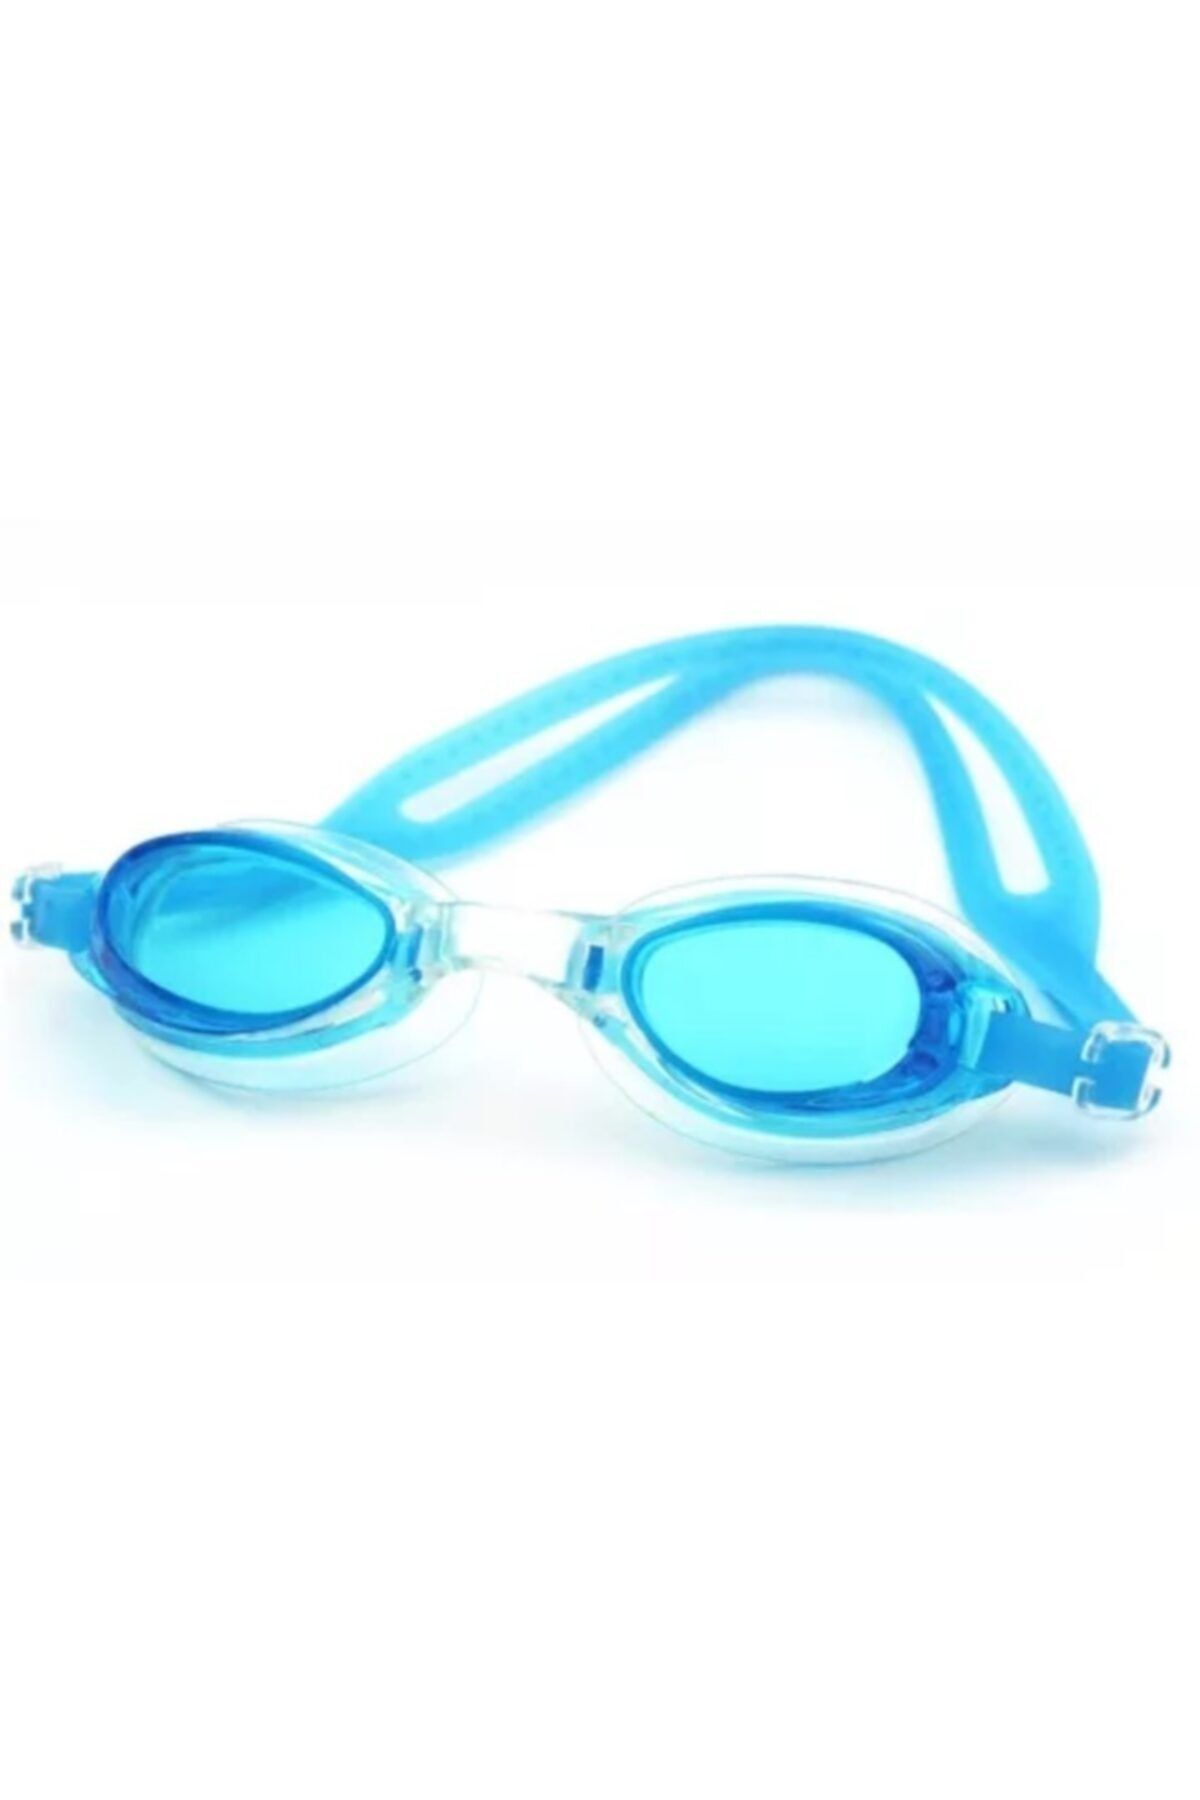 eleven market Açık Mavi Çocuk Yüzücü Gözlüğü Havuz Deniz Gözlüğü 9-14 Yaş